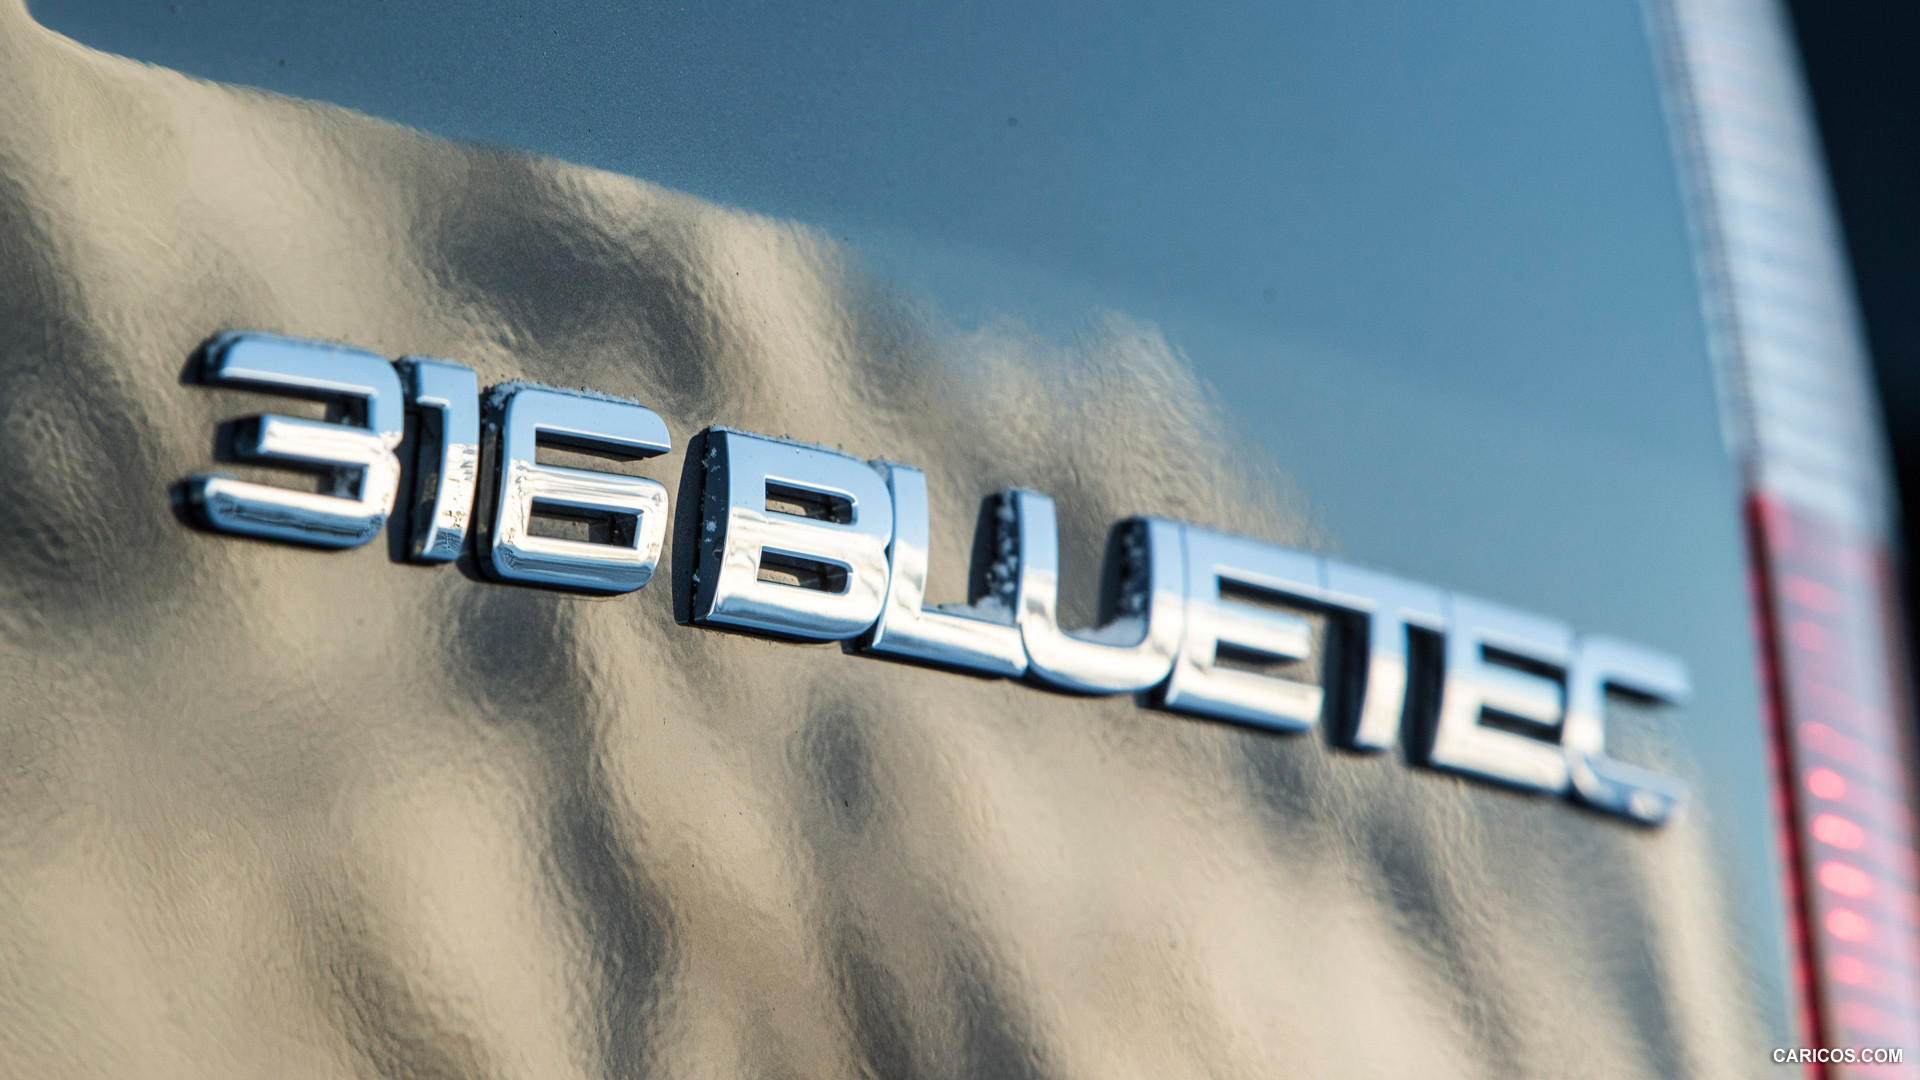 2015 Mercedes-Benz Sprinter 316 BlueTec 4X4 - Badge, #95 of 126